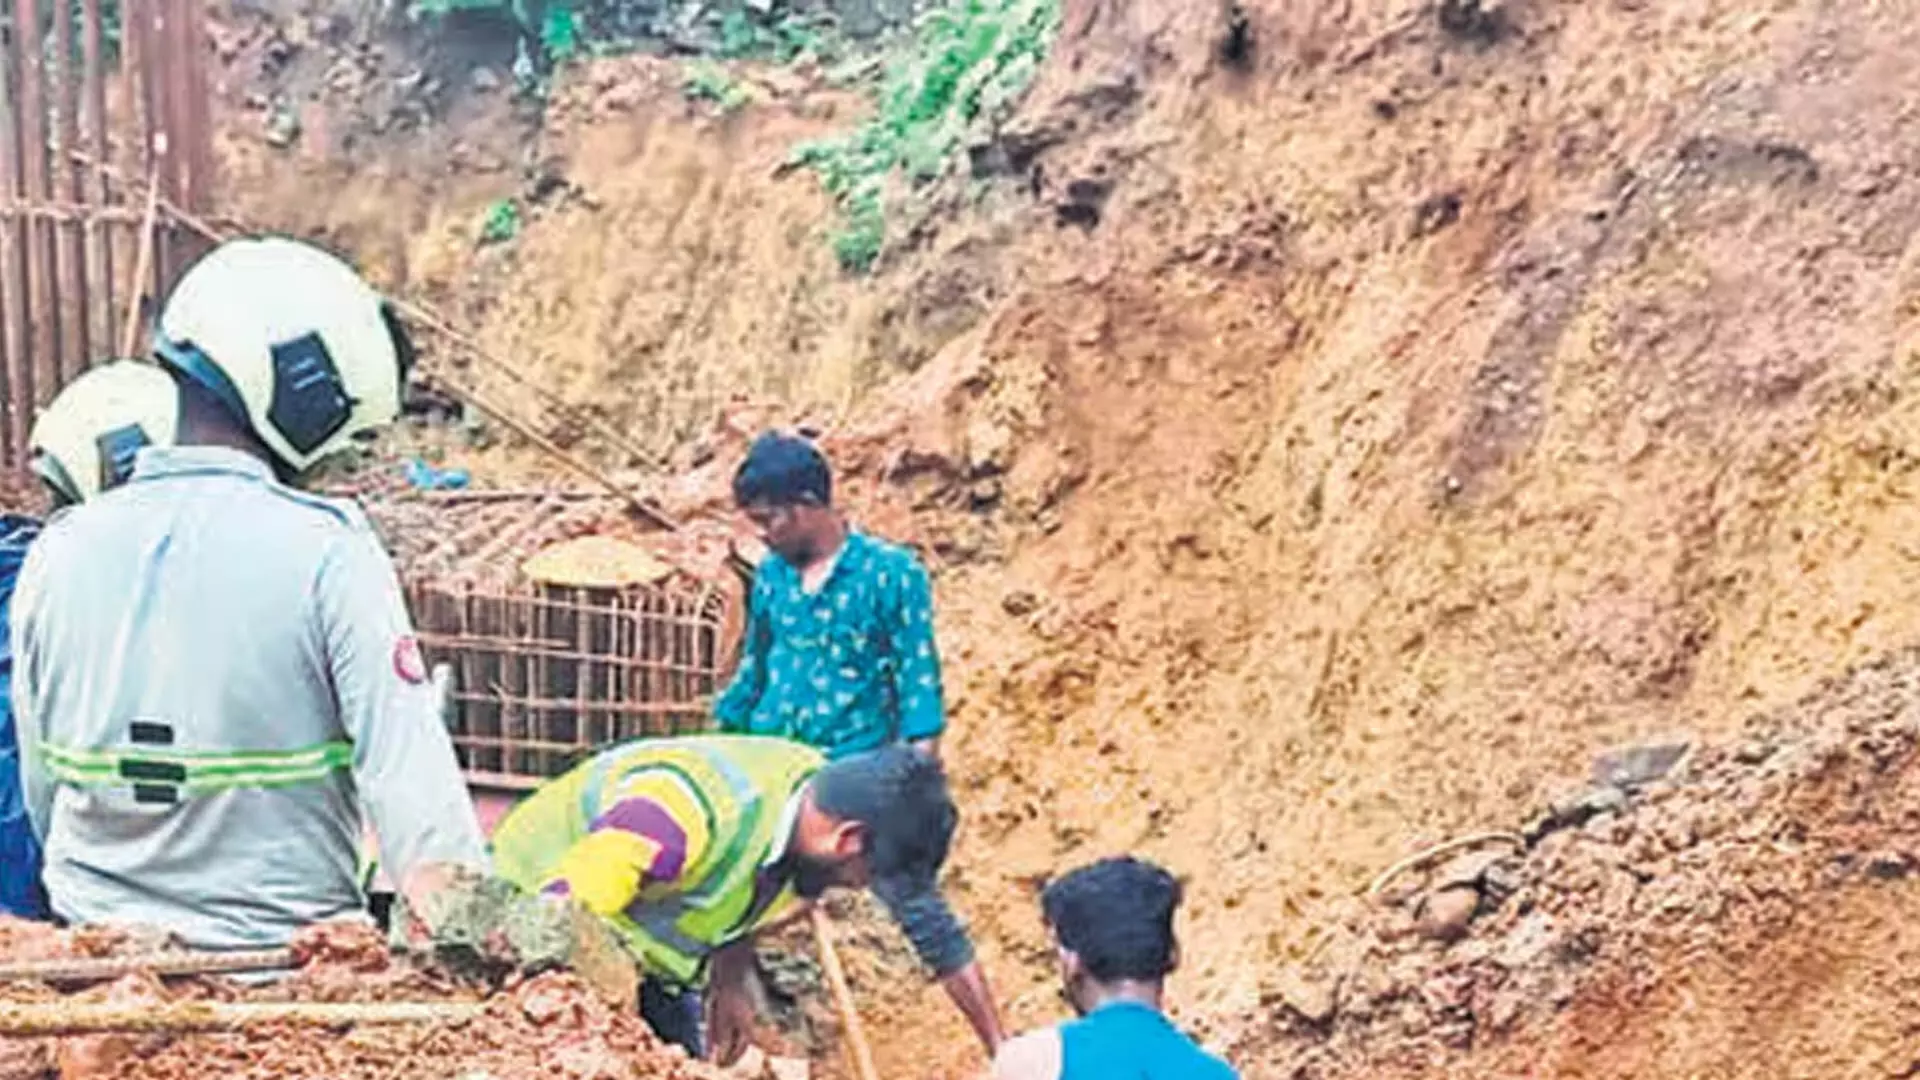 MUMBAI: मलाड में मिट्टी धंसने की घटना में मजदूर की मौत के बाद ठेकेदार पर मामला दर्ज